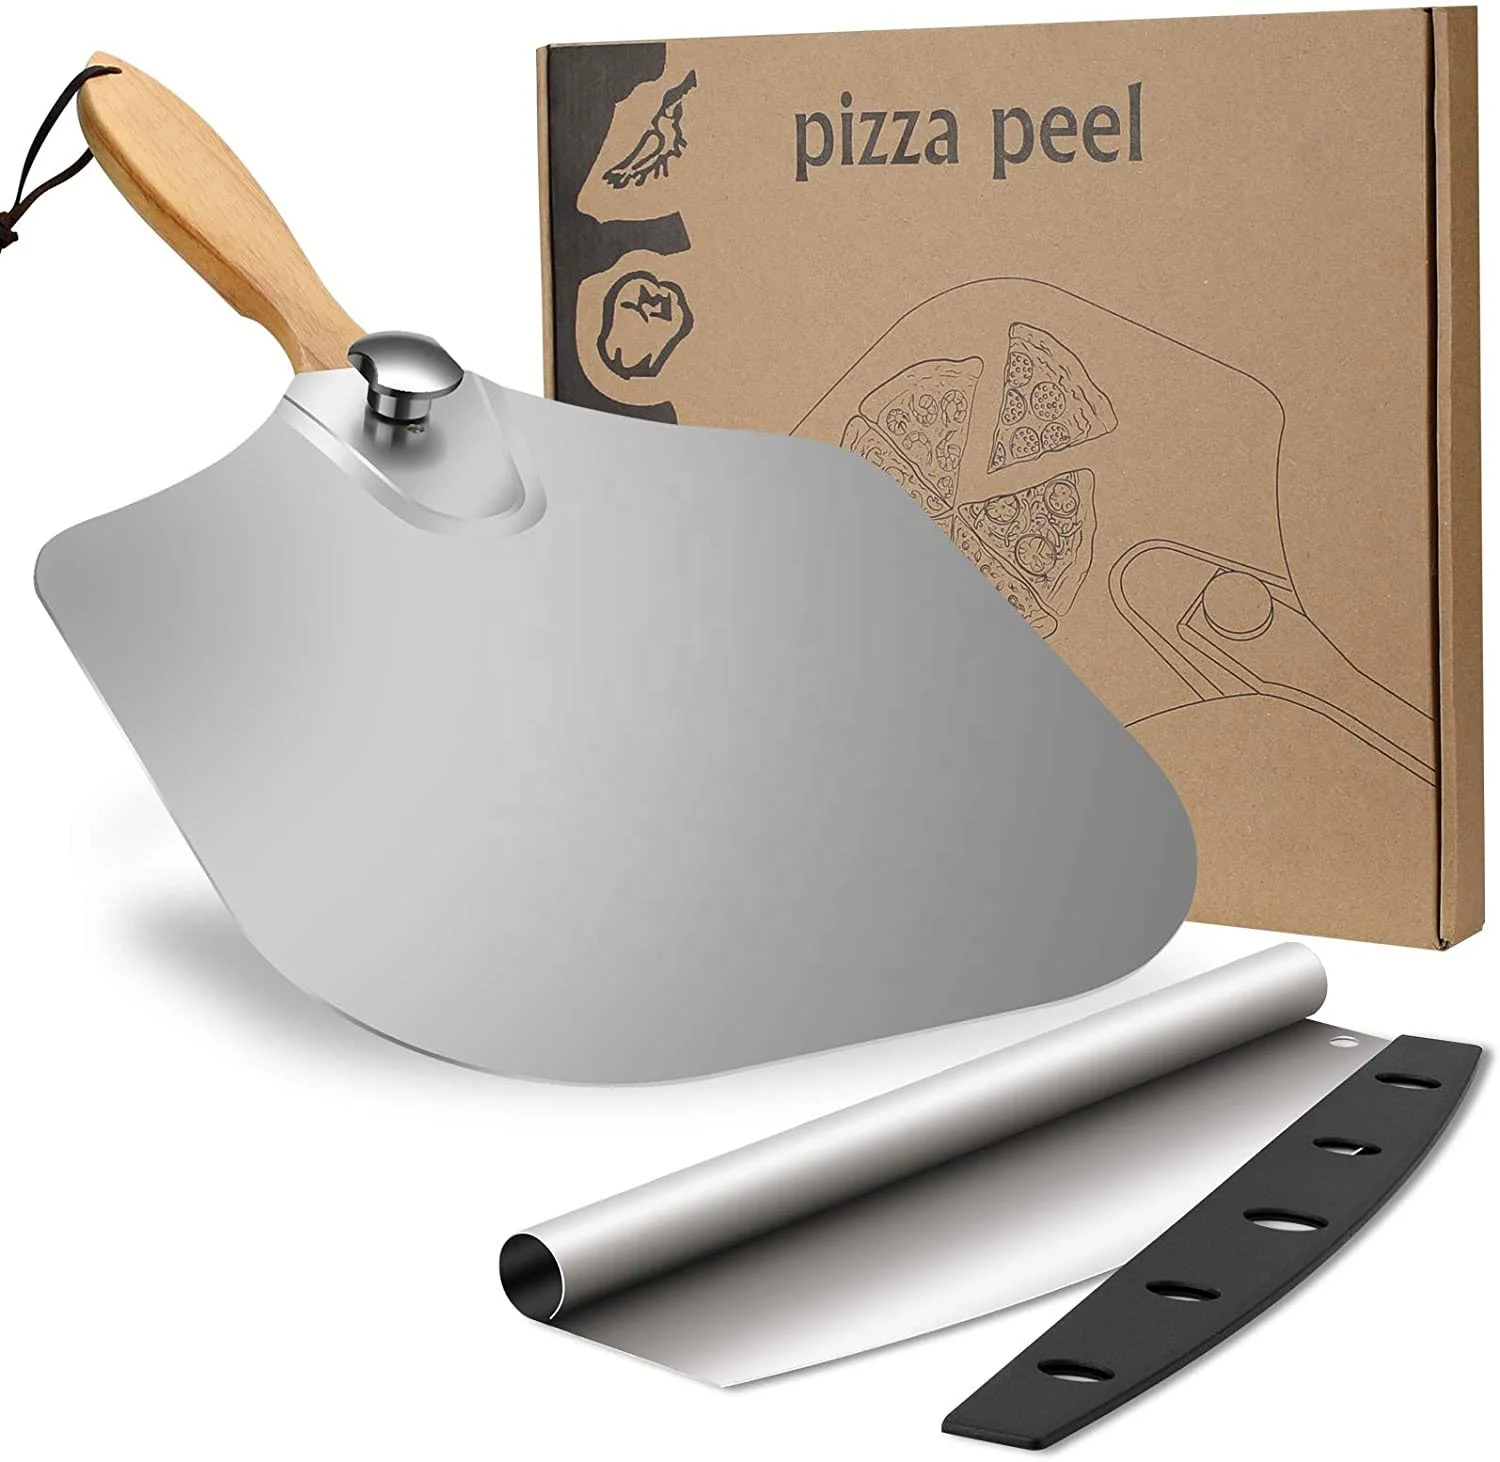 12 Χ 14 Inch Foldable Aluminum Pizza Peel Shovel with 14 Inch Cutter Rocker Pizza Tool Set For Homemade Baking Lovers